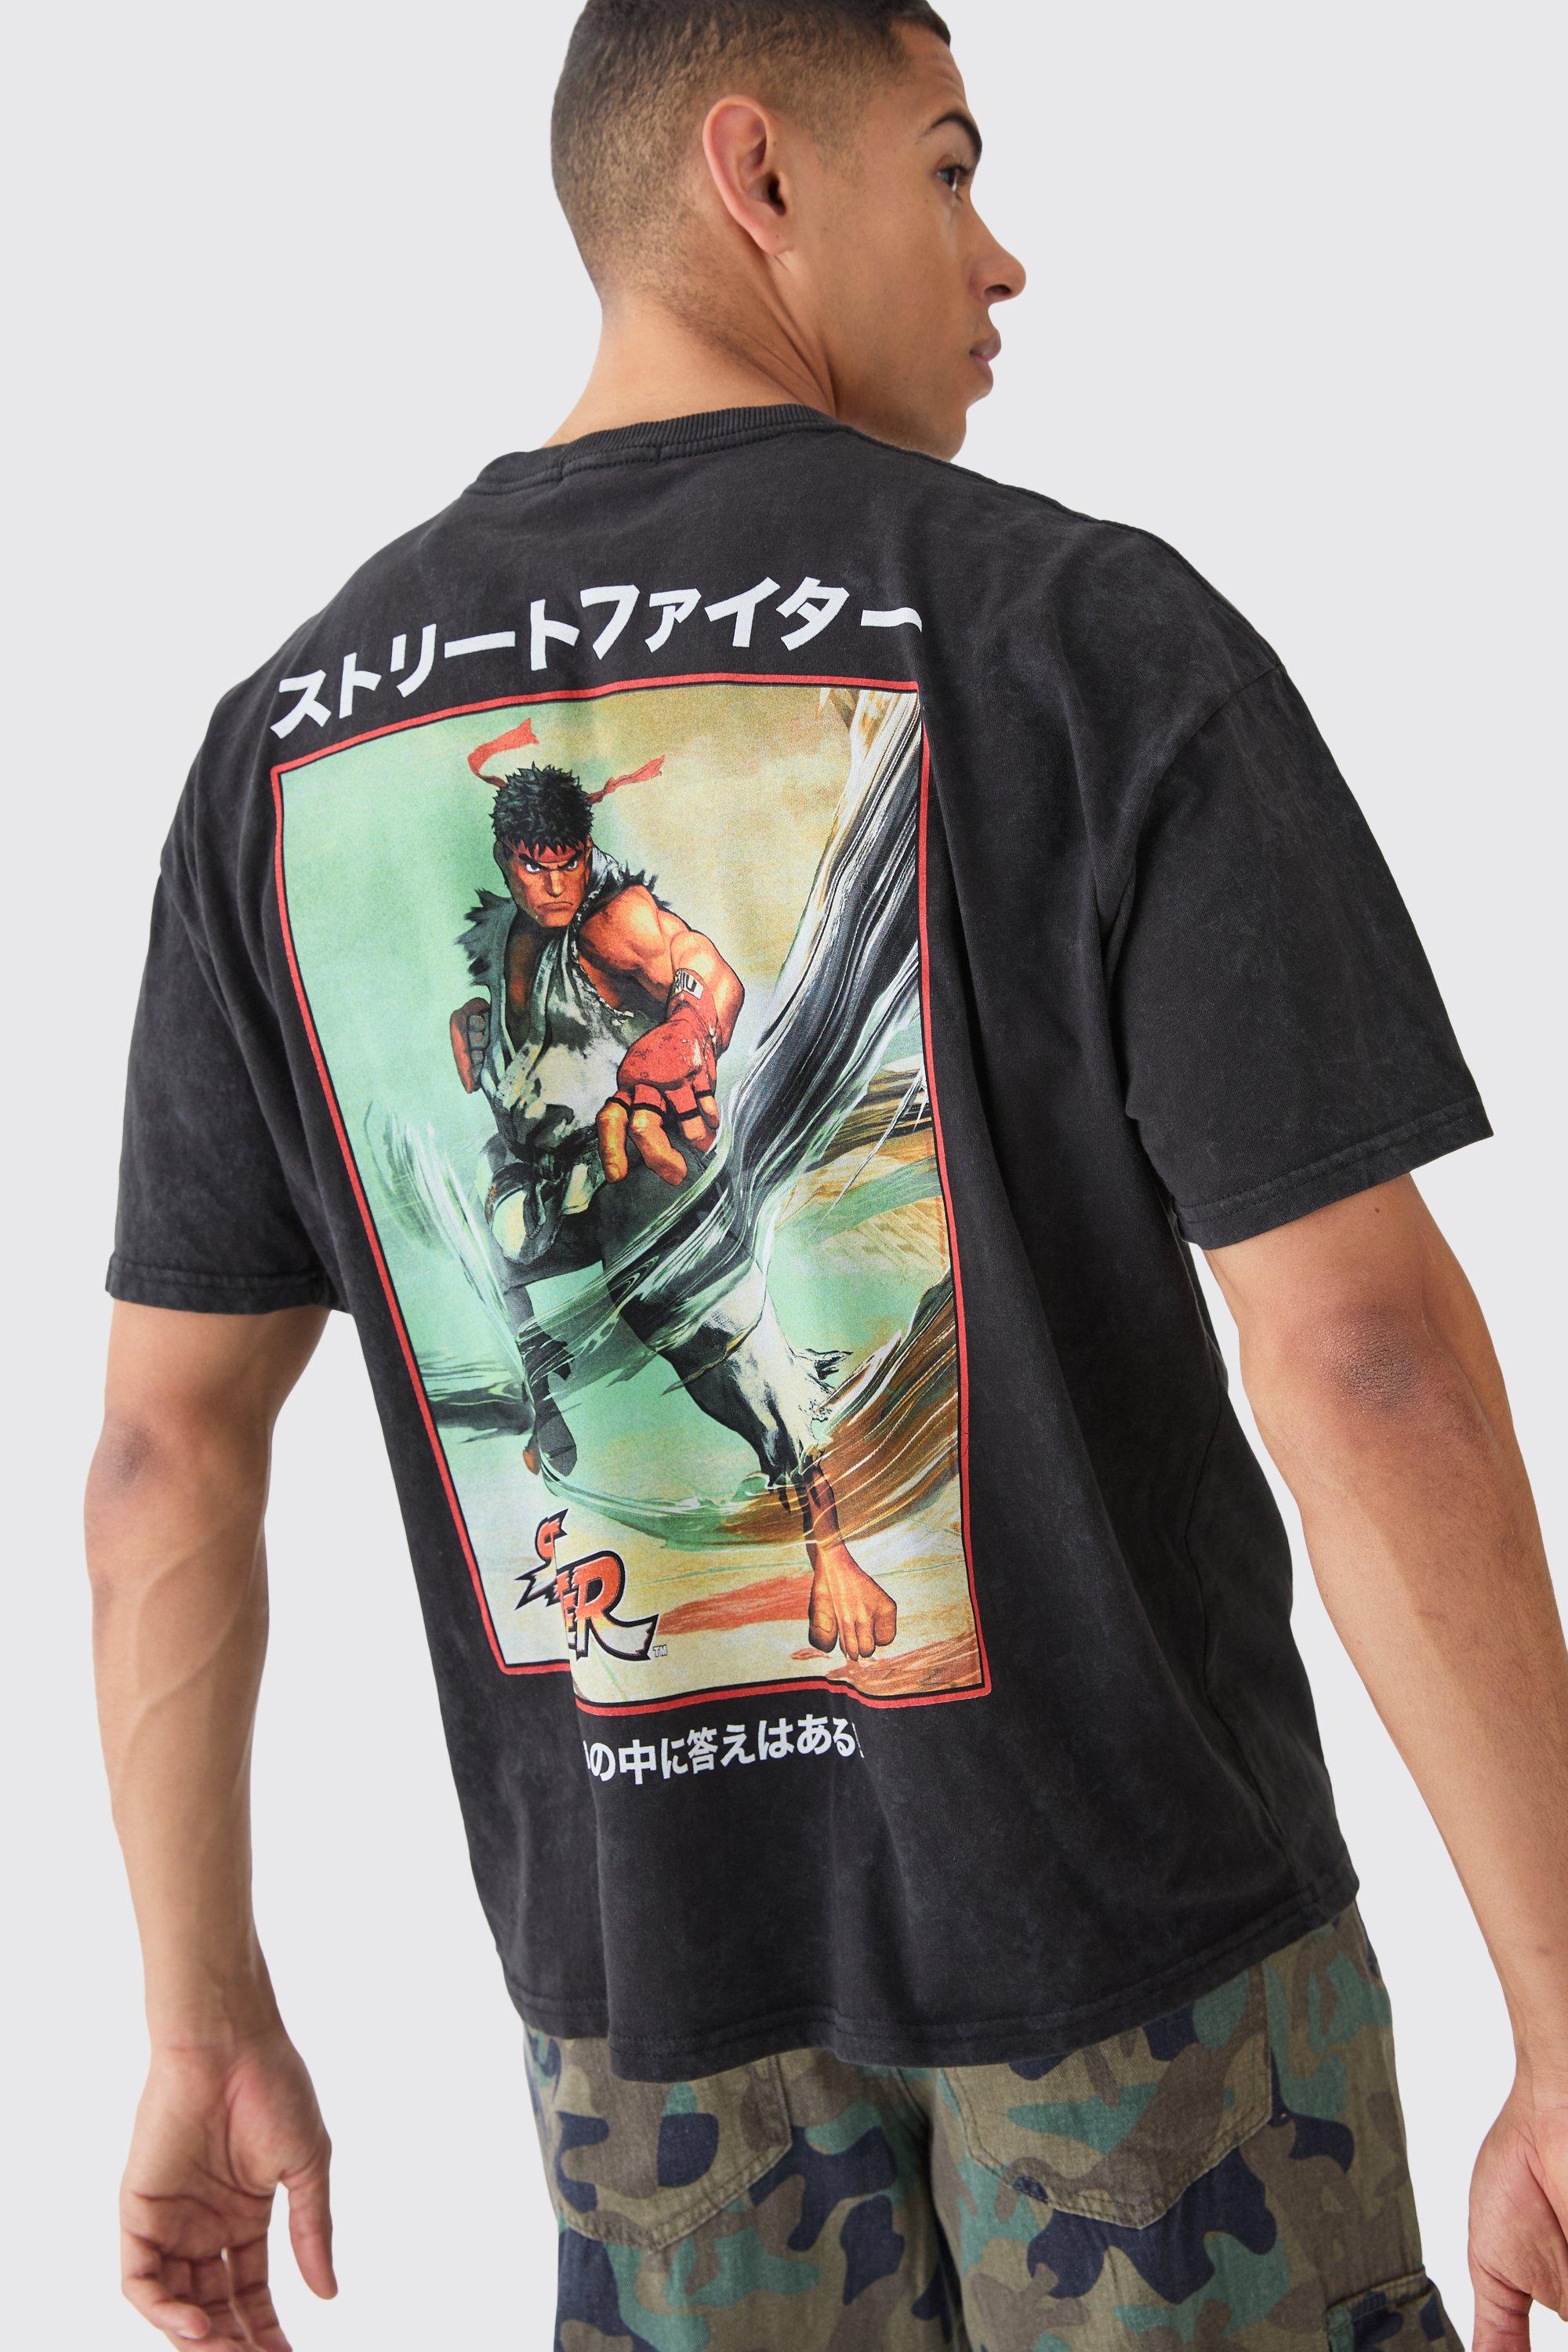 Mens Black Oversized Street Fighter Anime License T-shirt, Black